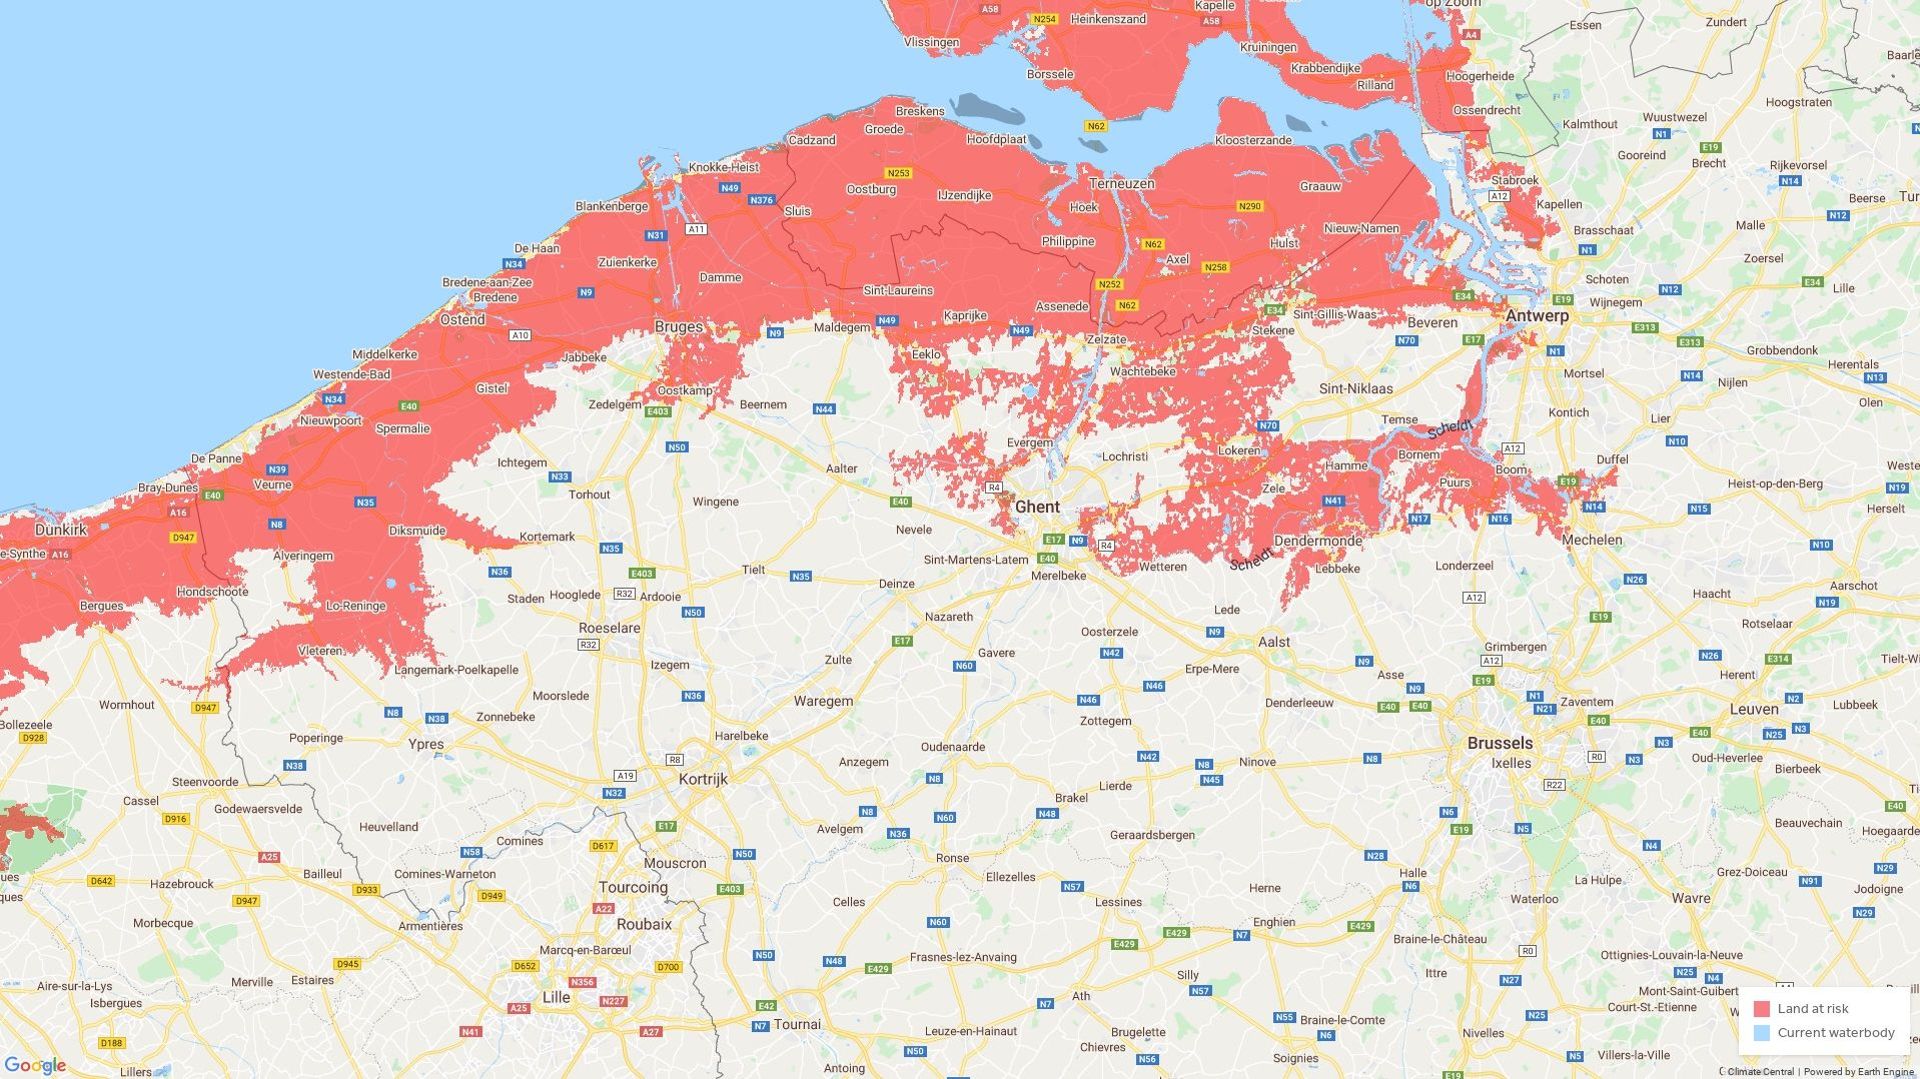 Capture d'écran de la carte du site Climatecentral.org, qui permet de visualiser les zones à risque selon les différents modèles.